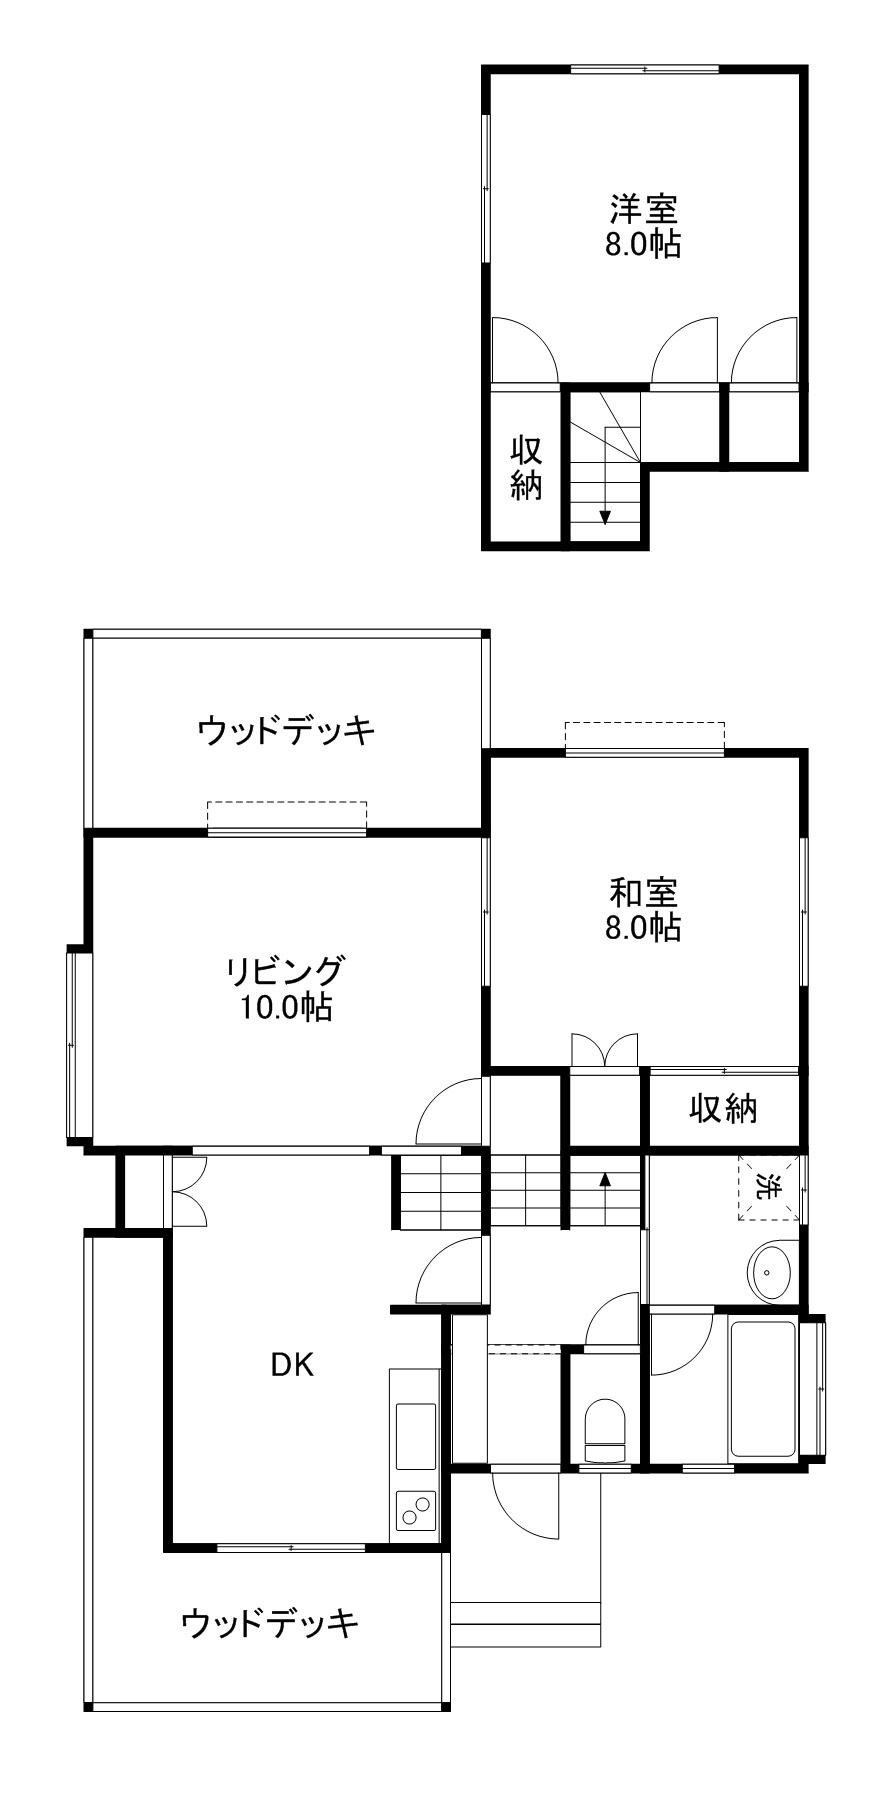 Floor plan. 7.9 million yen, 2LDK, Land area 310.8 sq m , Building area 79.38 sq m